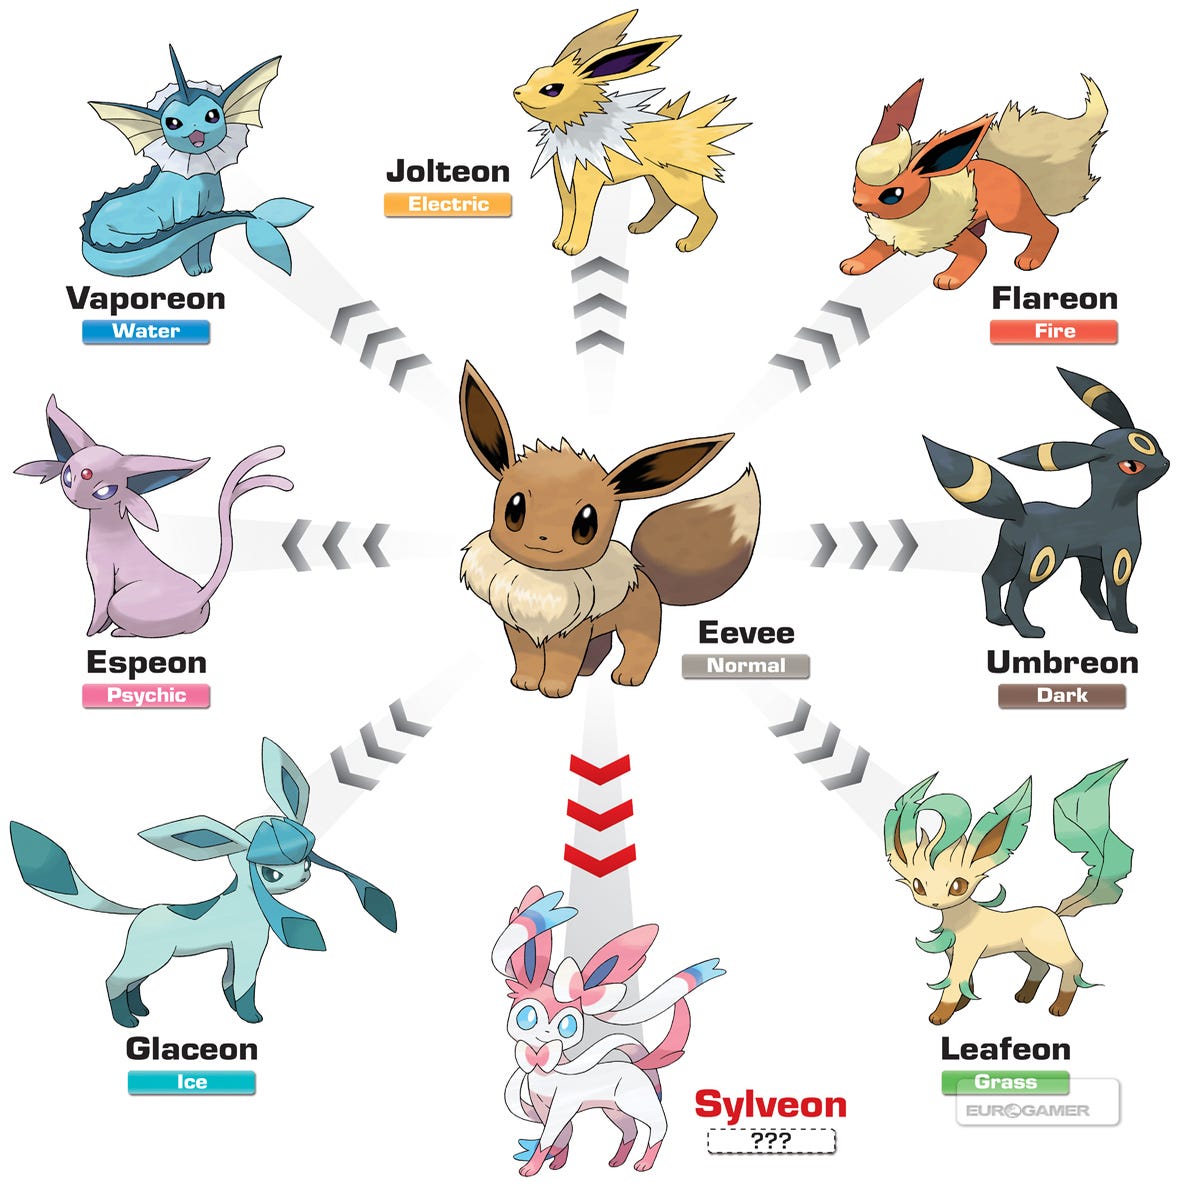 Nova evolução de Eevee, Sylveon, pode ser Pokémon de um tipo inédito -  Nintendo Blast